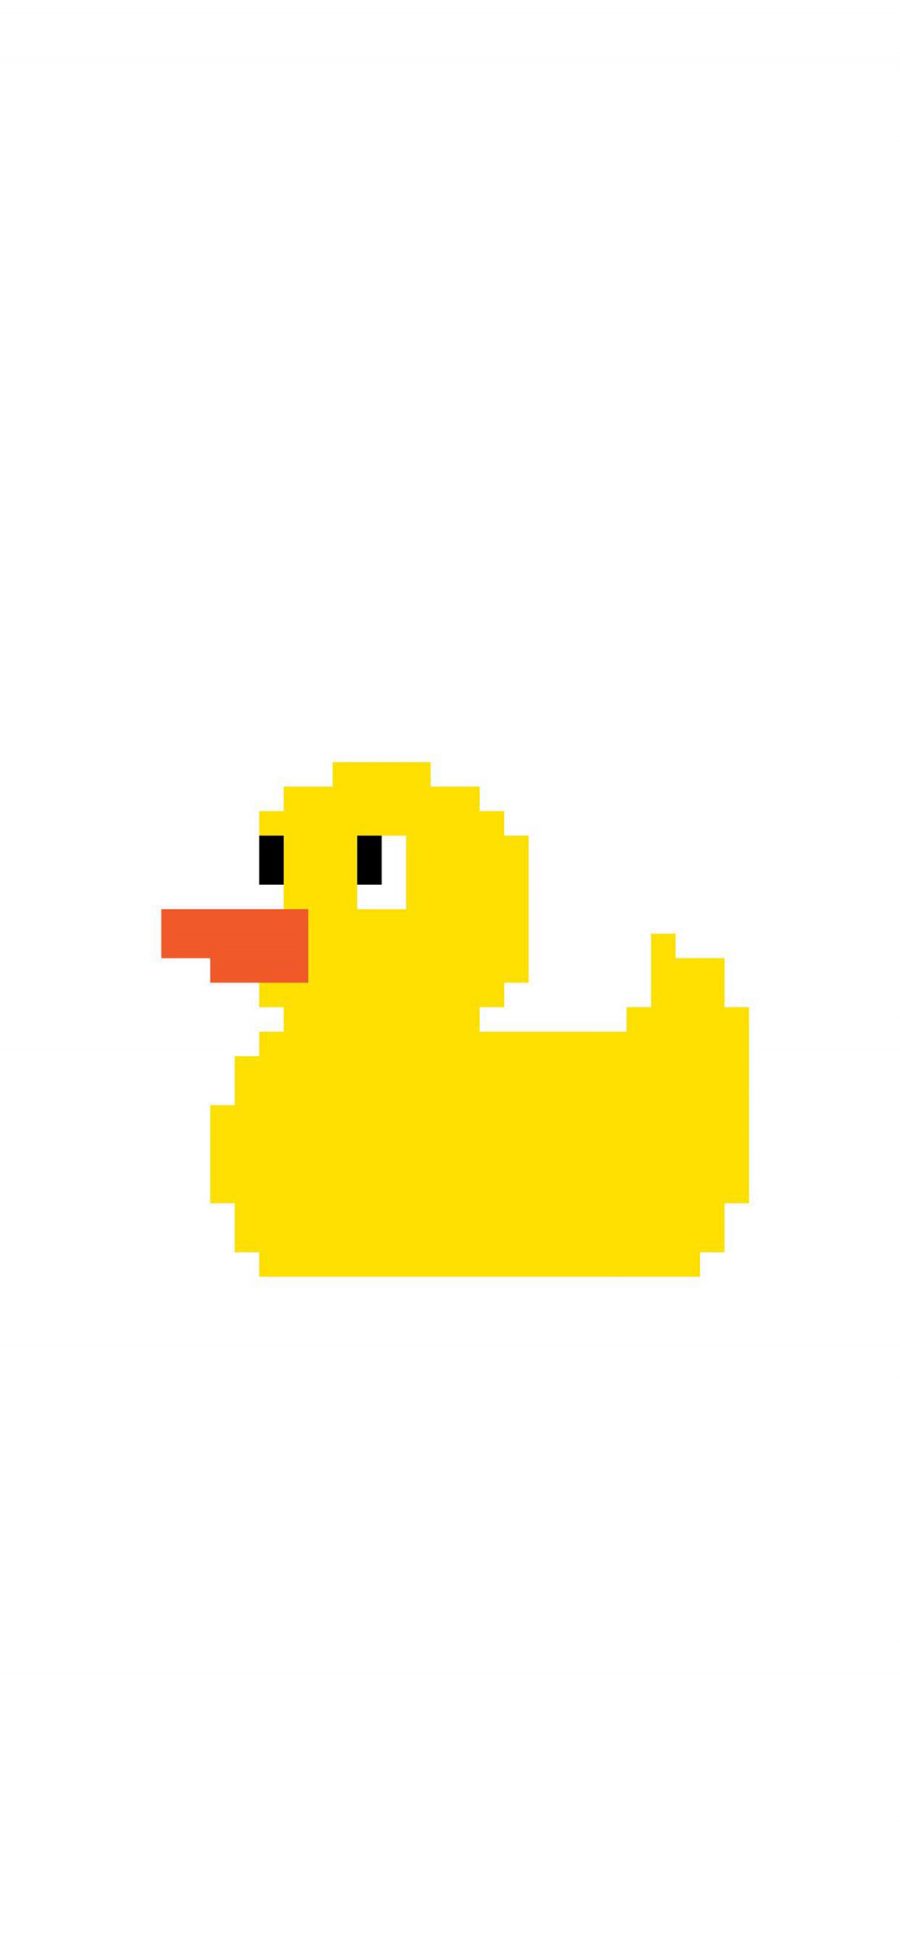 [2436×1125]小黄鸭 像素 马赛克 可爱 苹果手机动漫壁纸图片